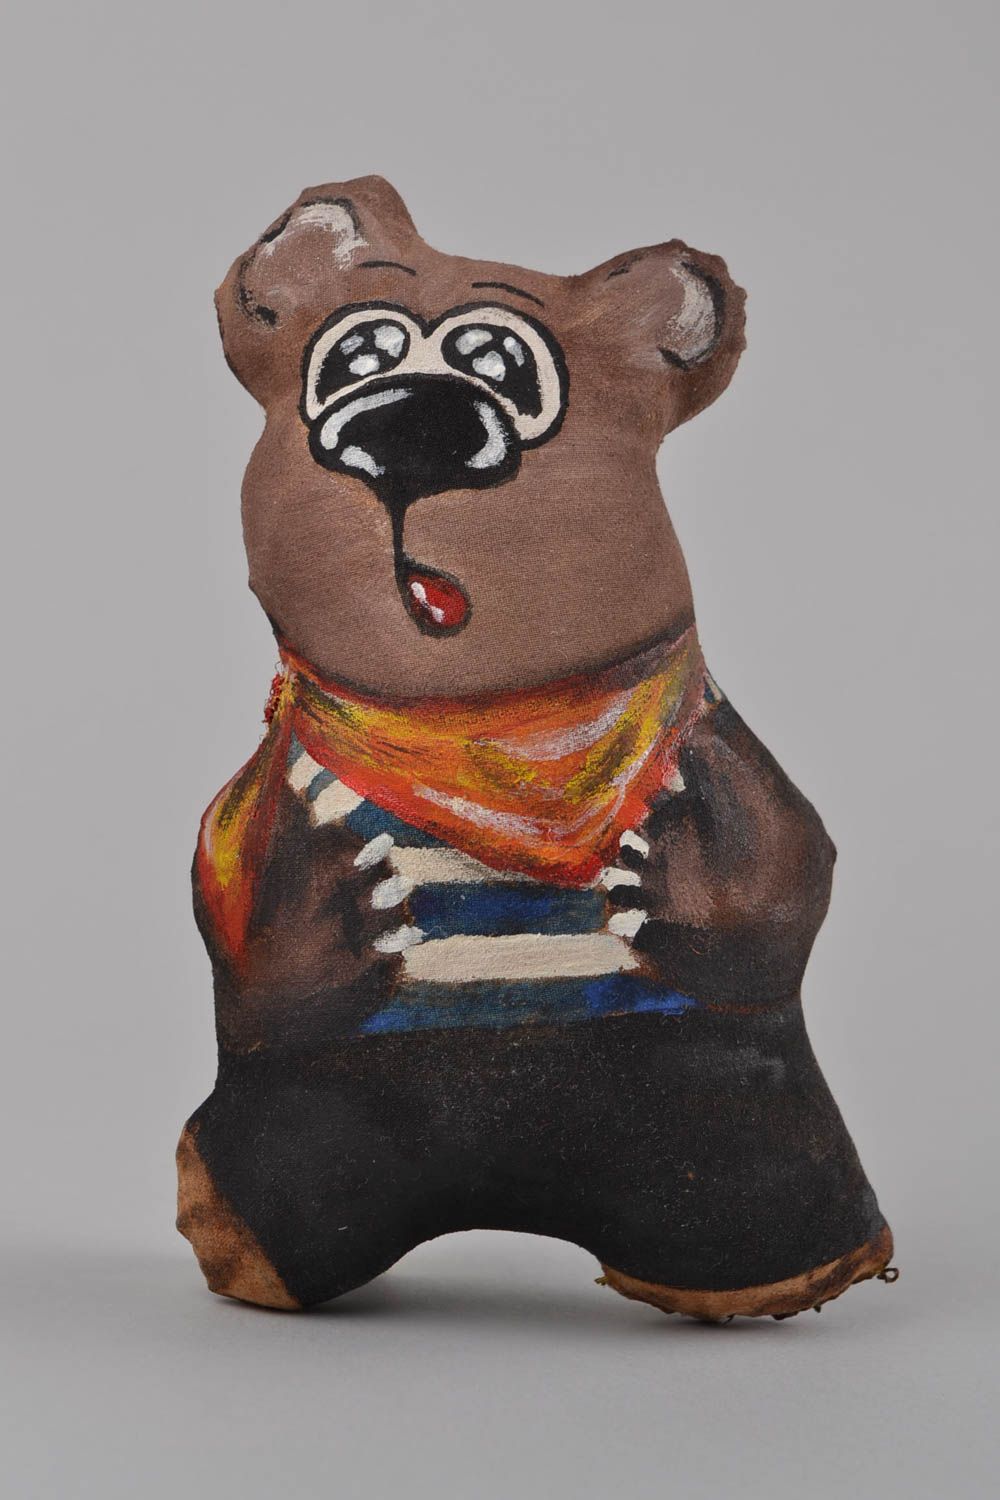 Расписная игрушка ручной работы с ароматом из льна оригинальная Медвежонок фото 1